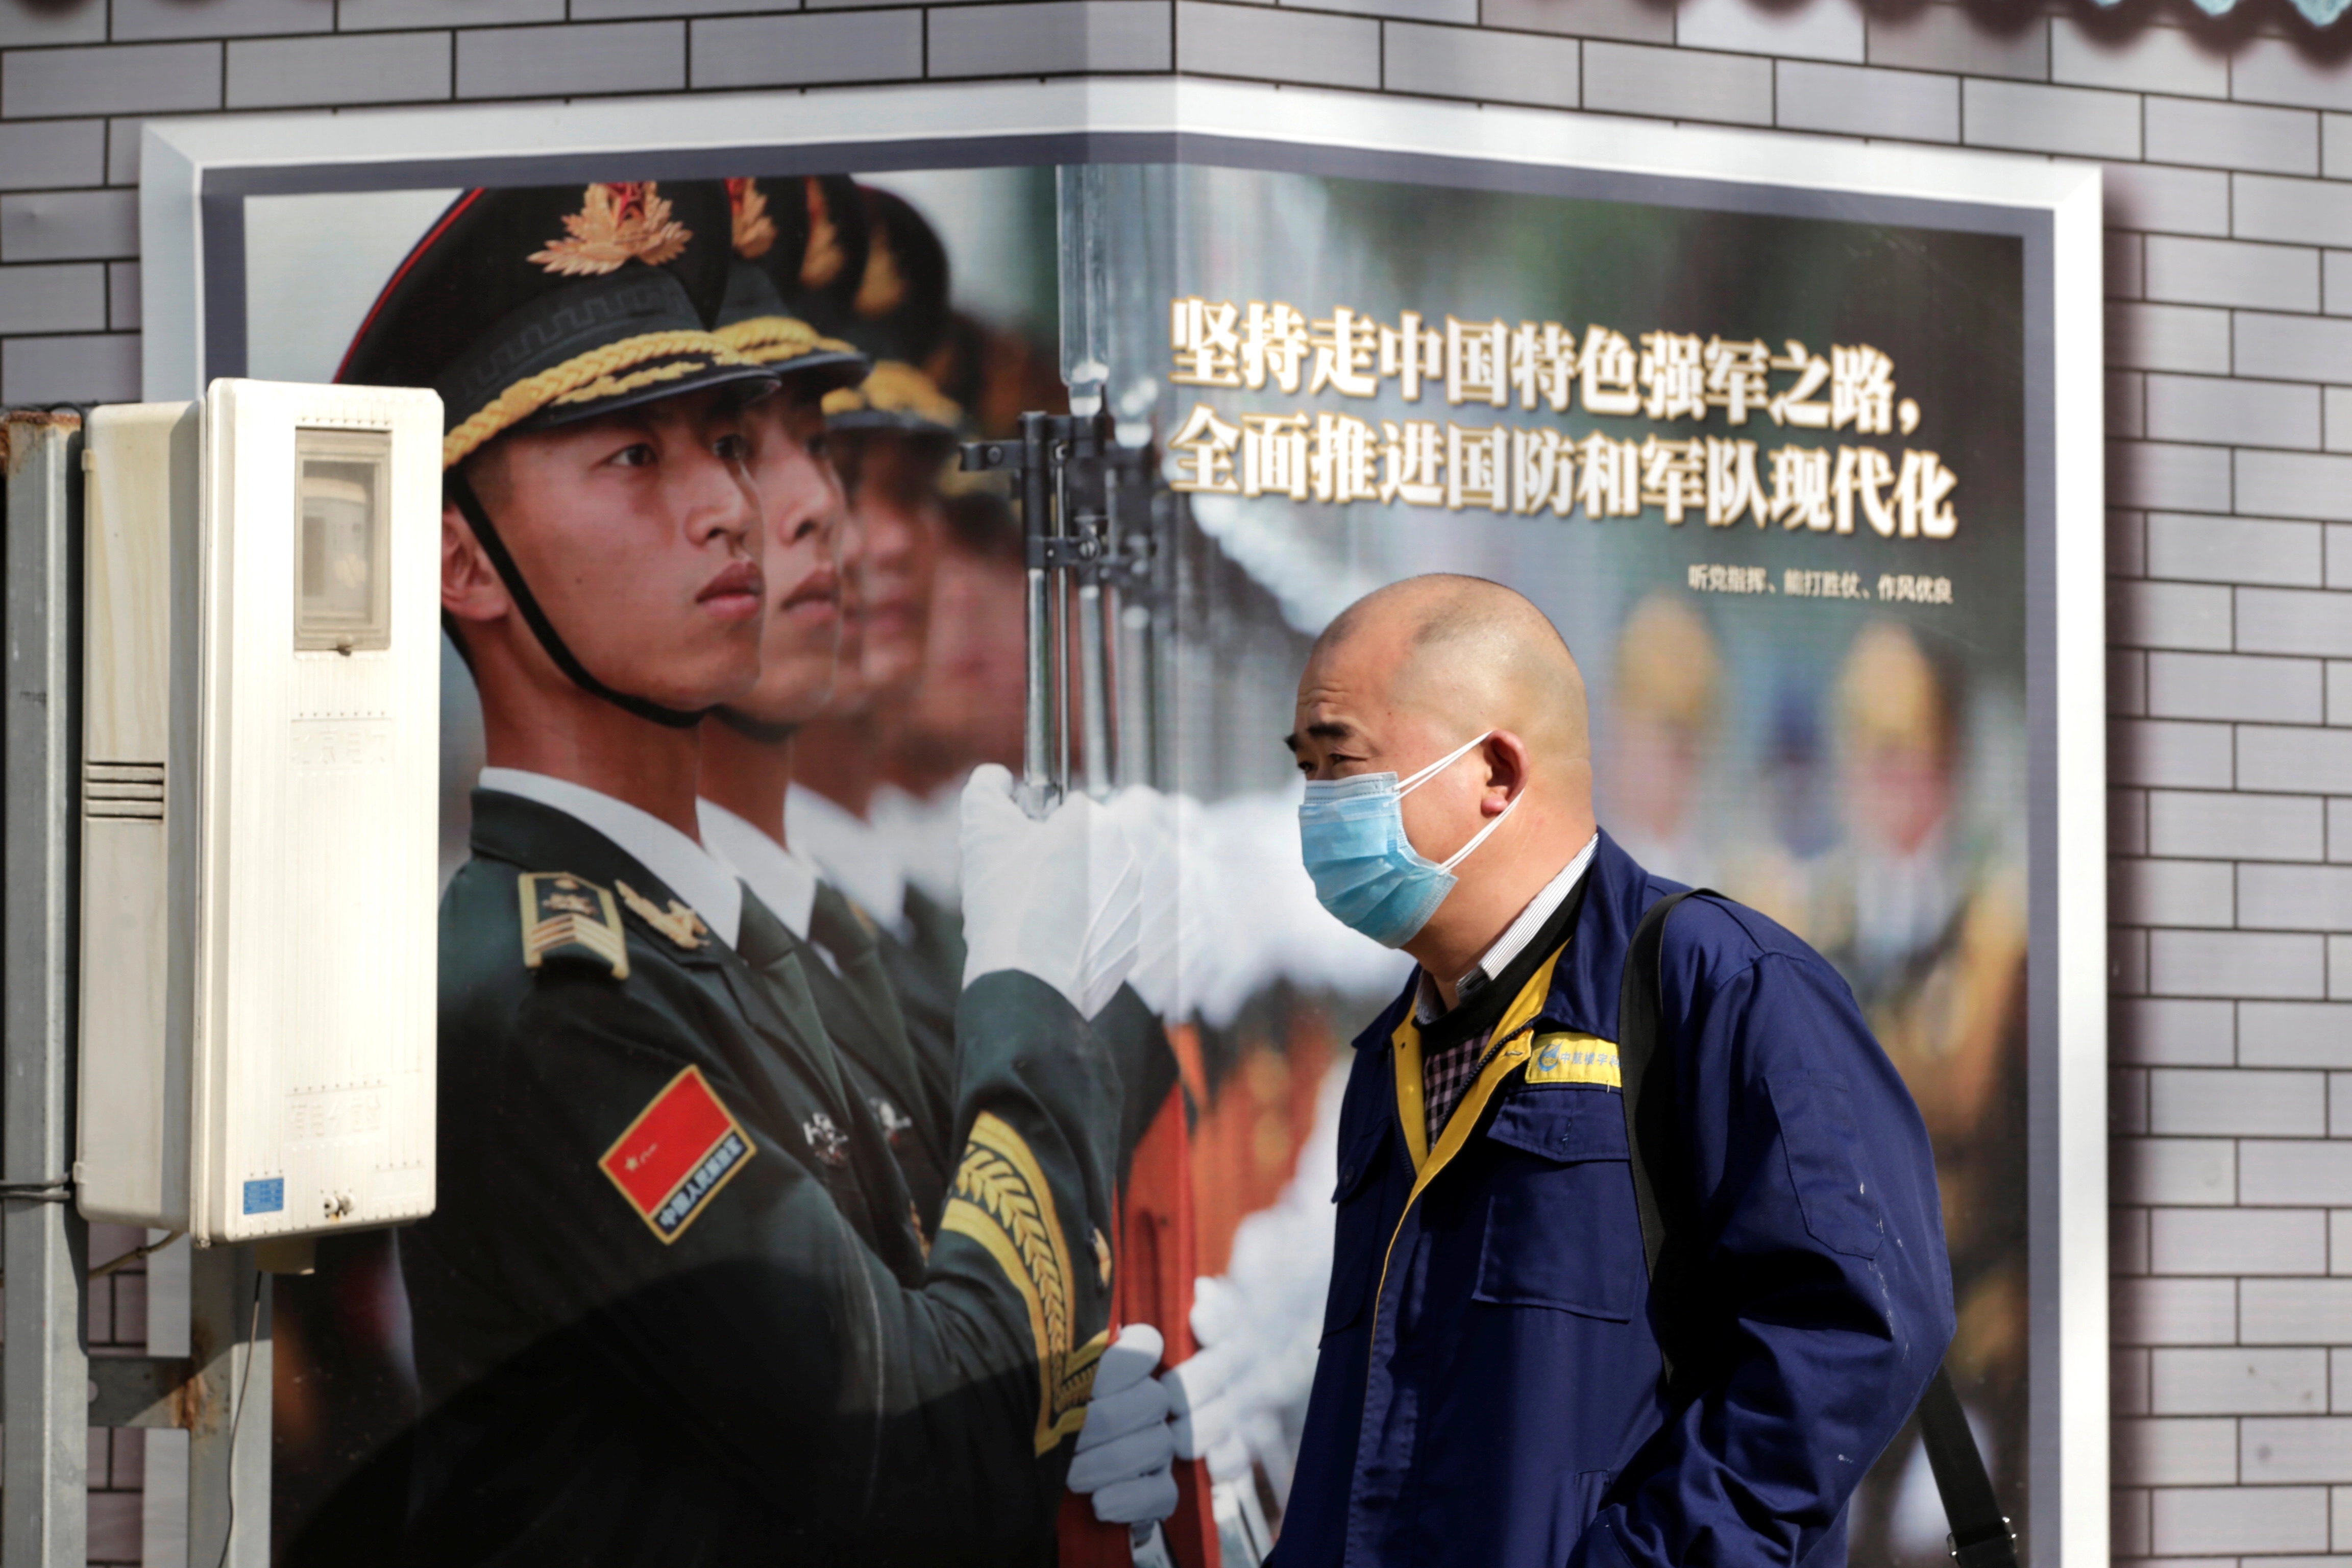 Çindən ABŞ-a ŞOK İDDİA - “Koronavirusu Çinə ABŞ ordusu gətirib”